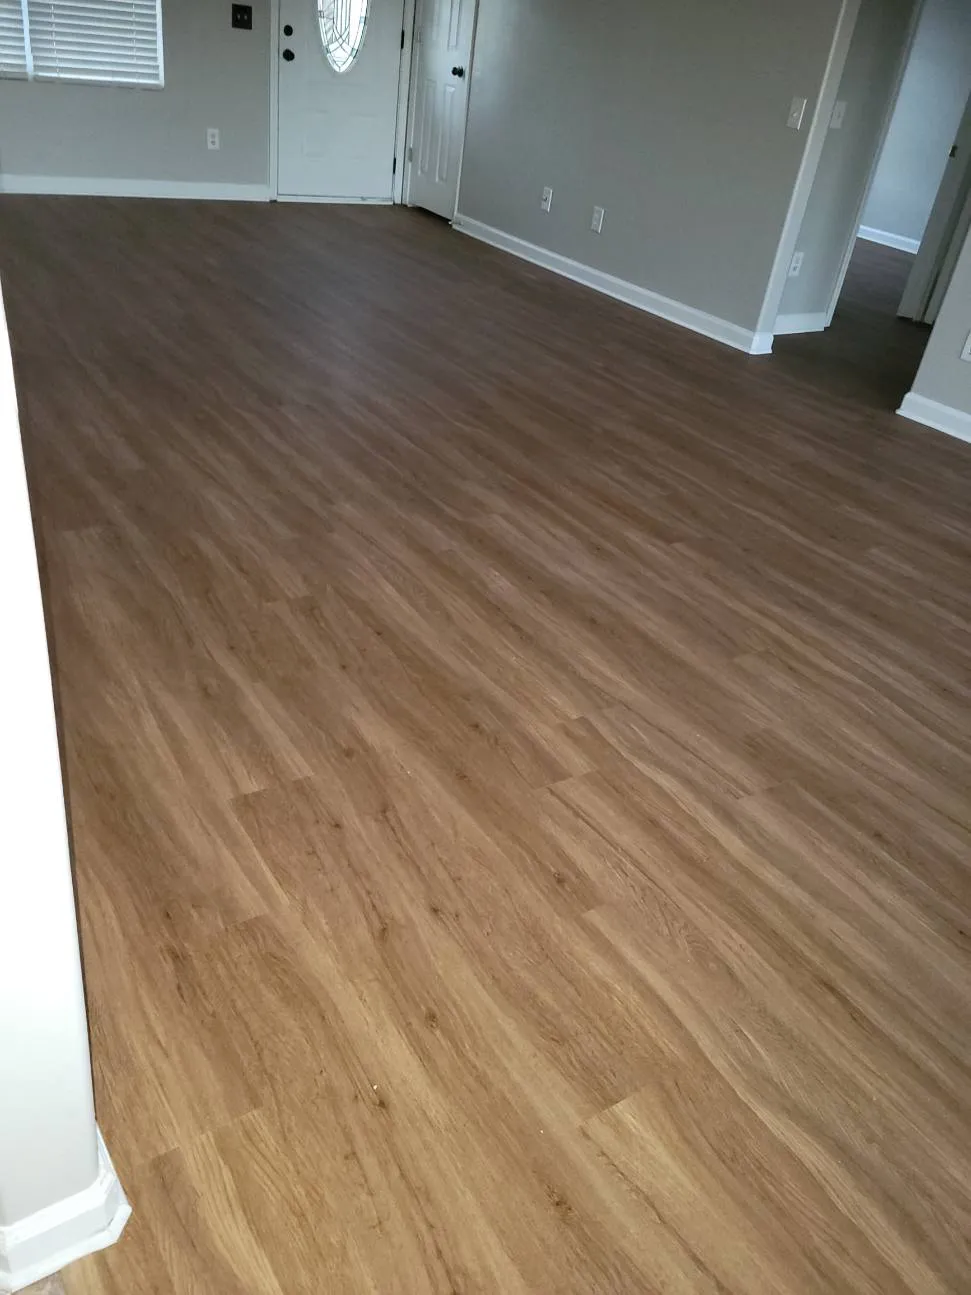 New hardwood Flooring in hallway of home